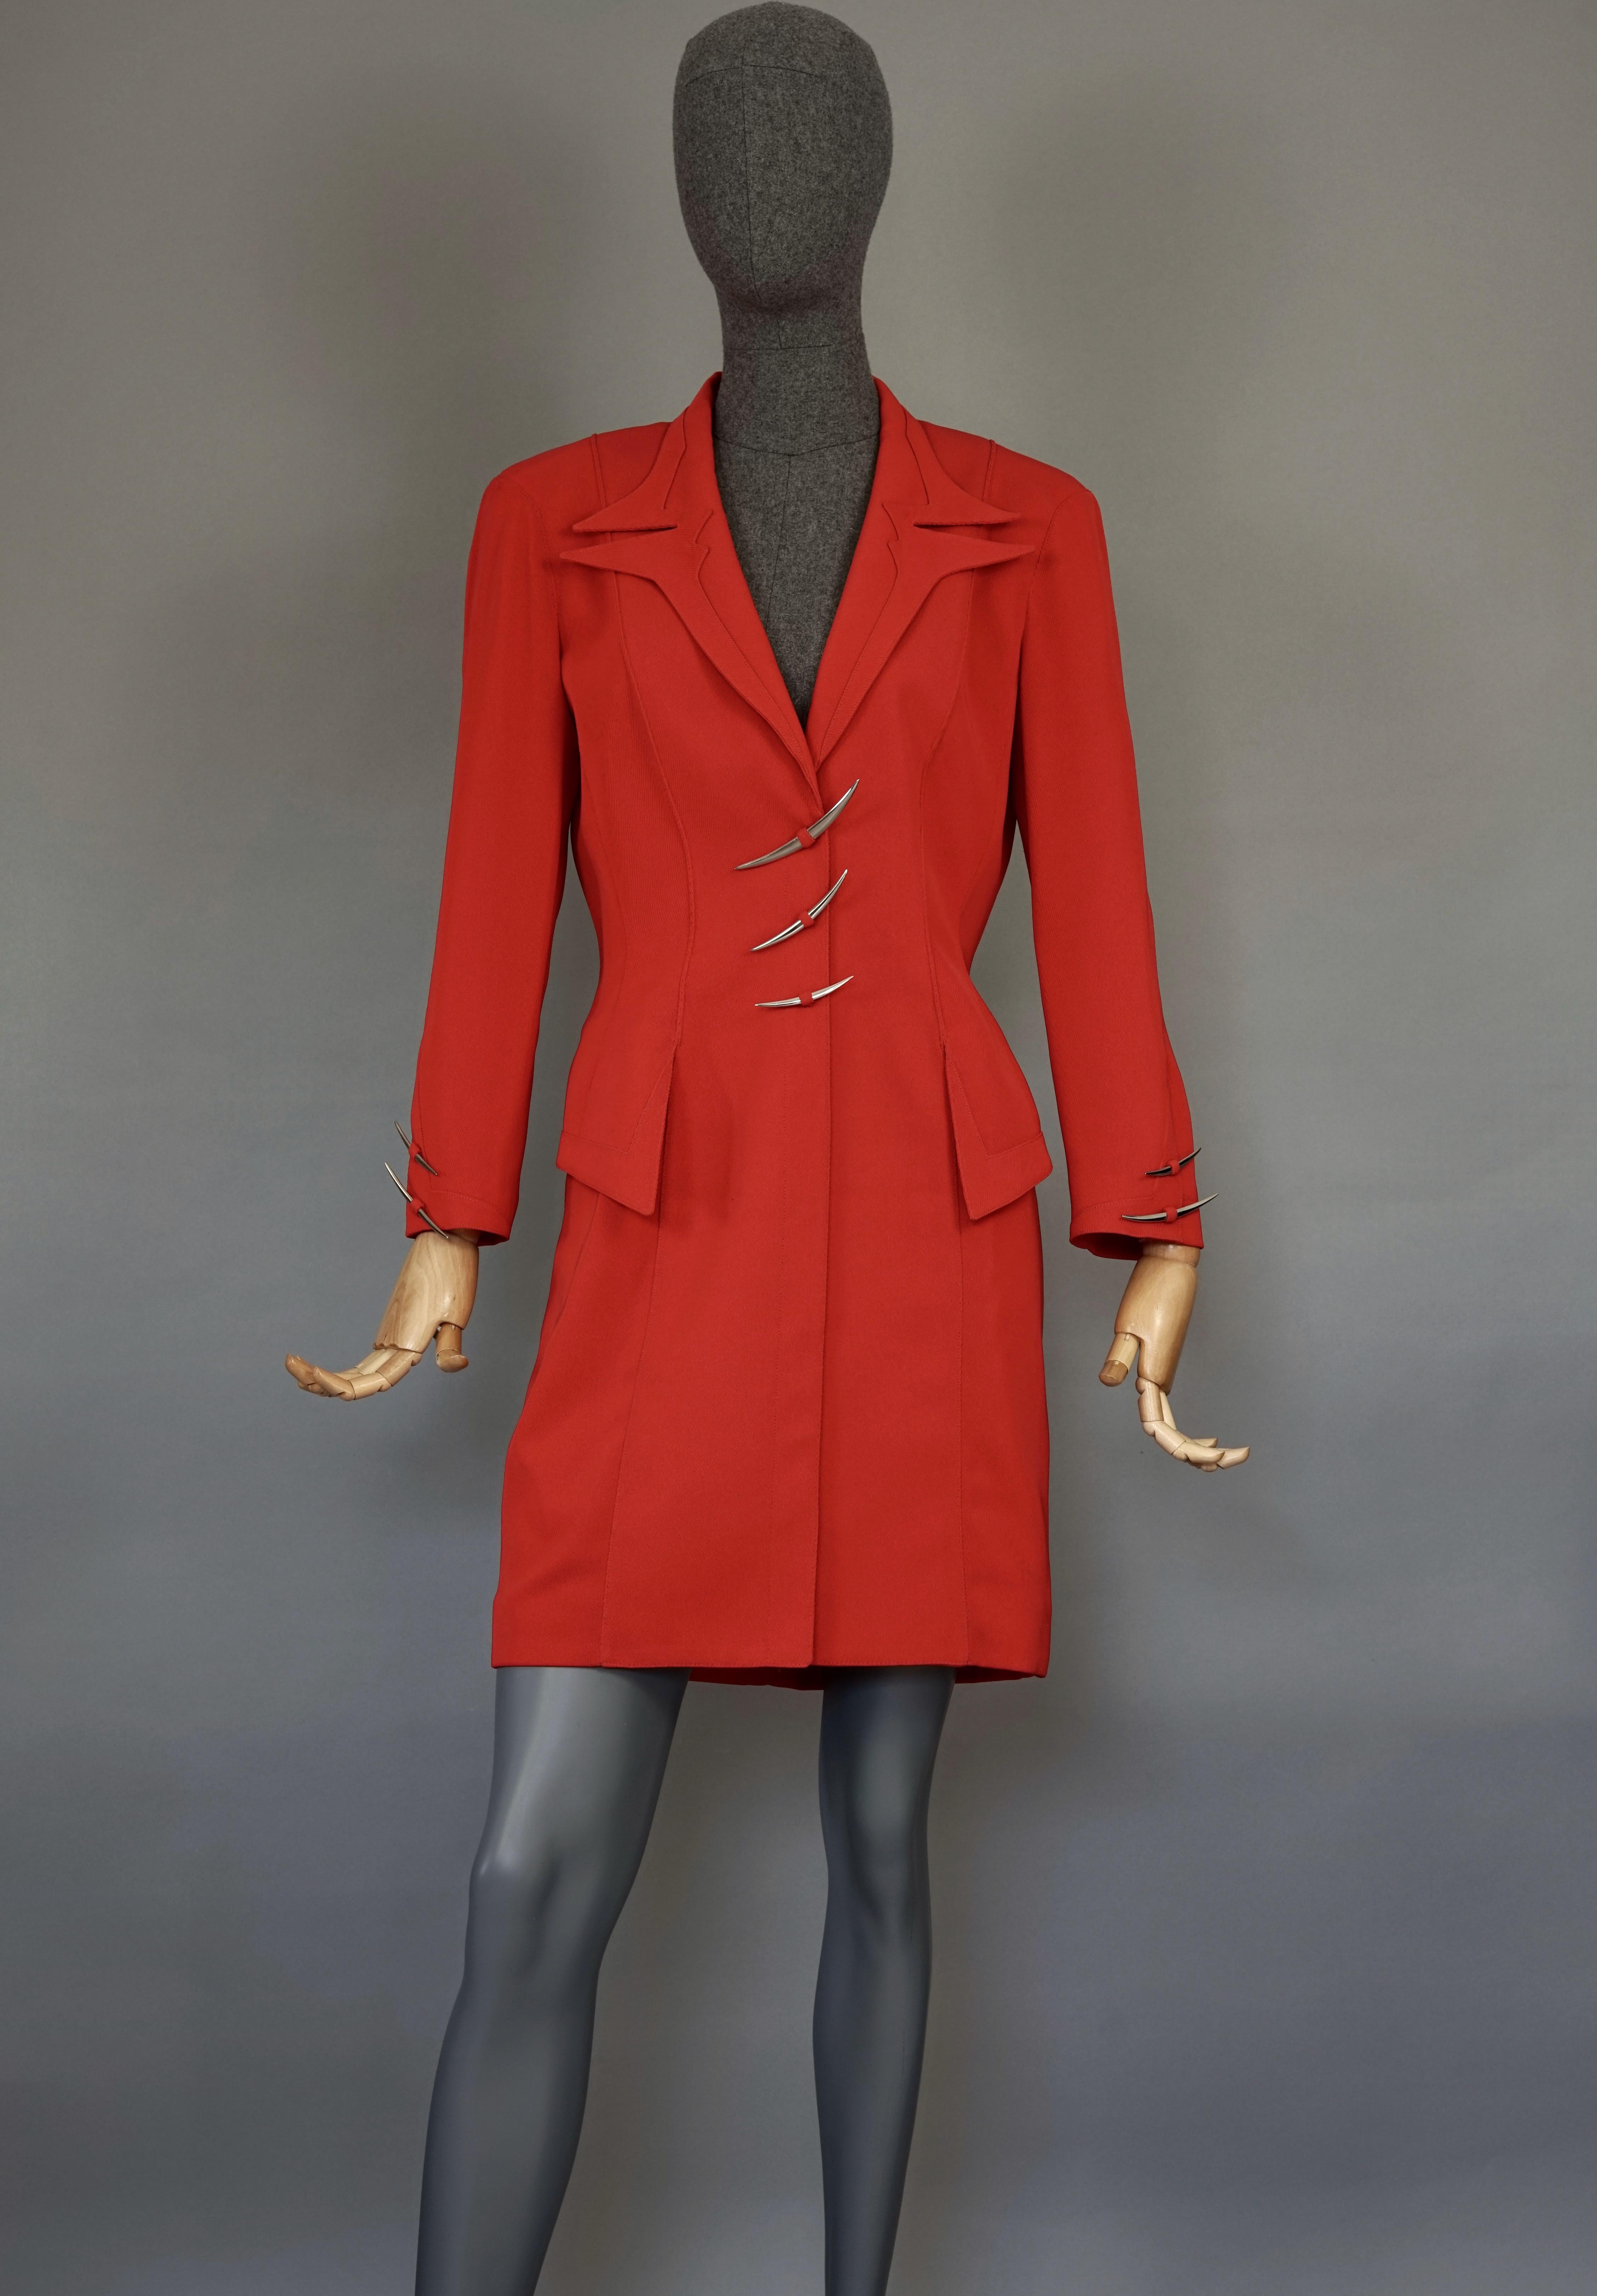 Rouge THIERRY MUGLER Costume vintage emblématique robe rouge futuriste à capuche en métal argenté en vente